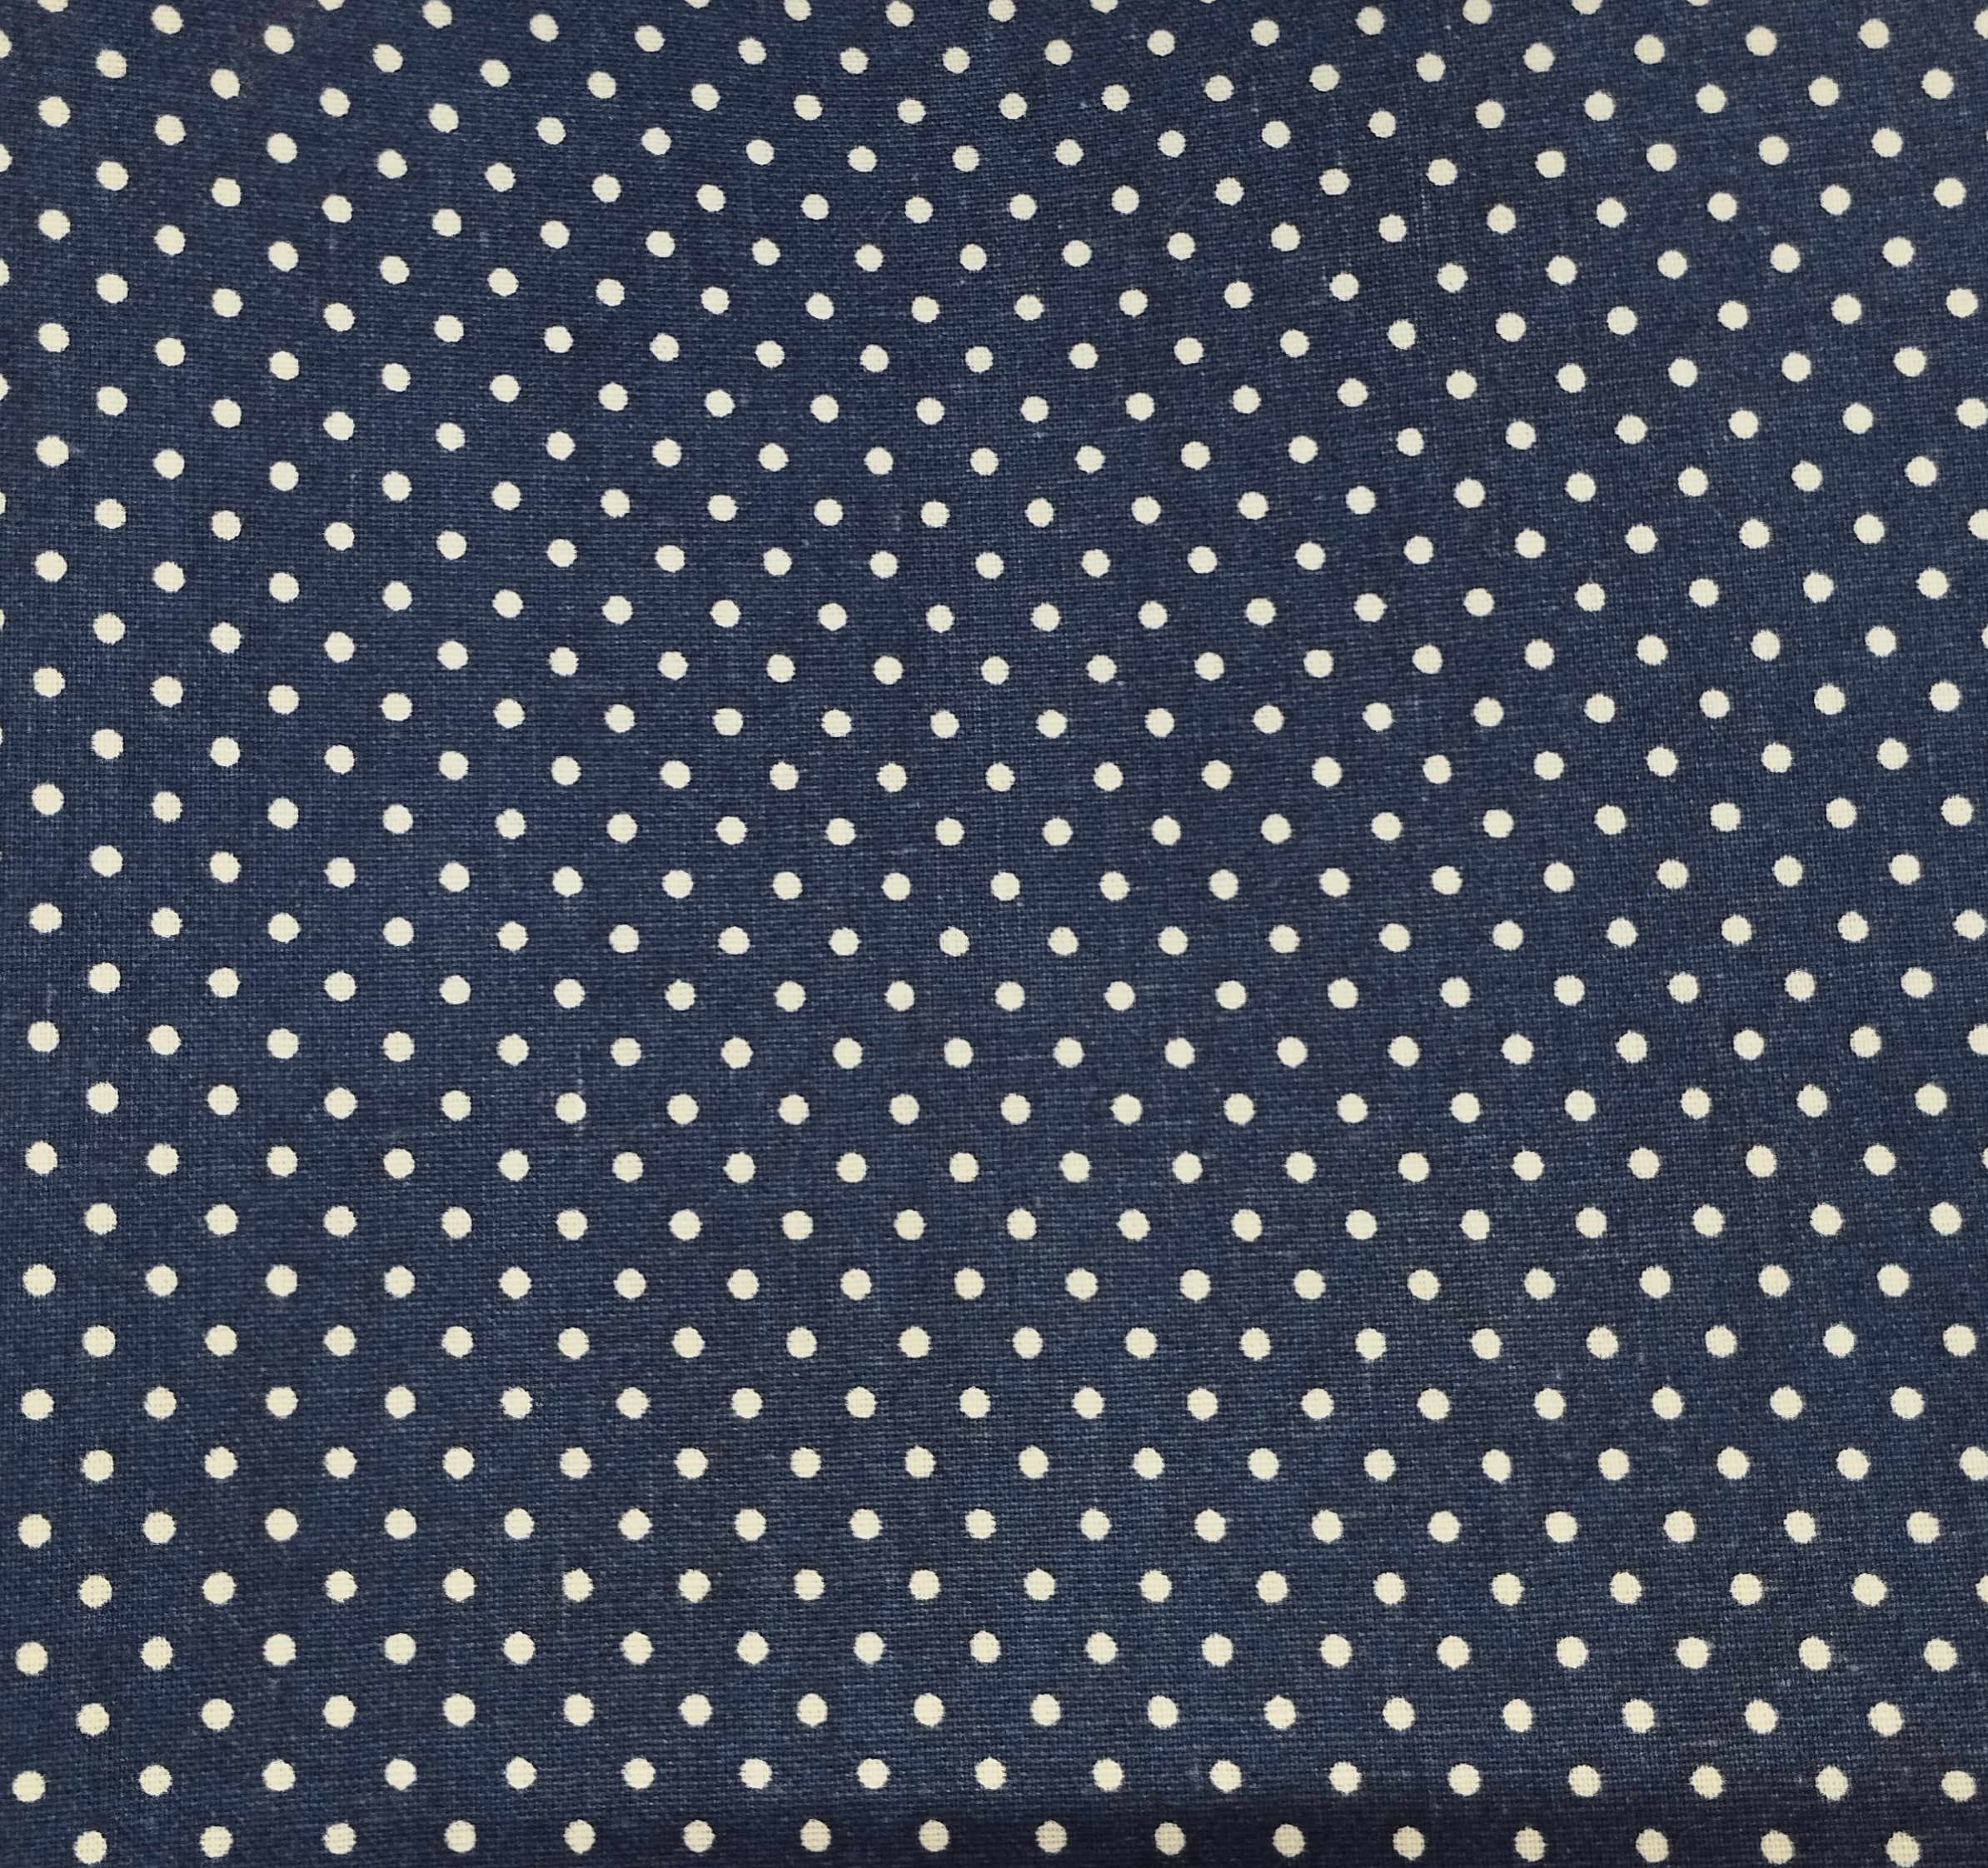 Tissu coton imprimé points bleu marine